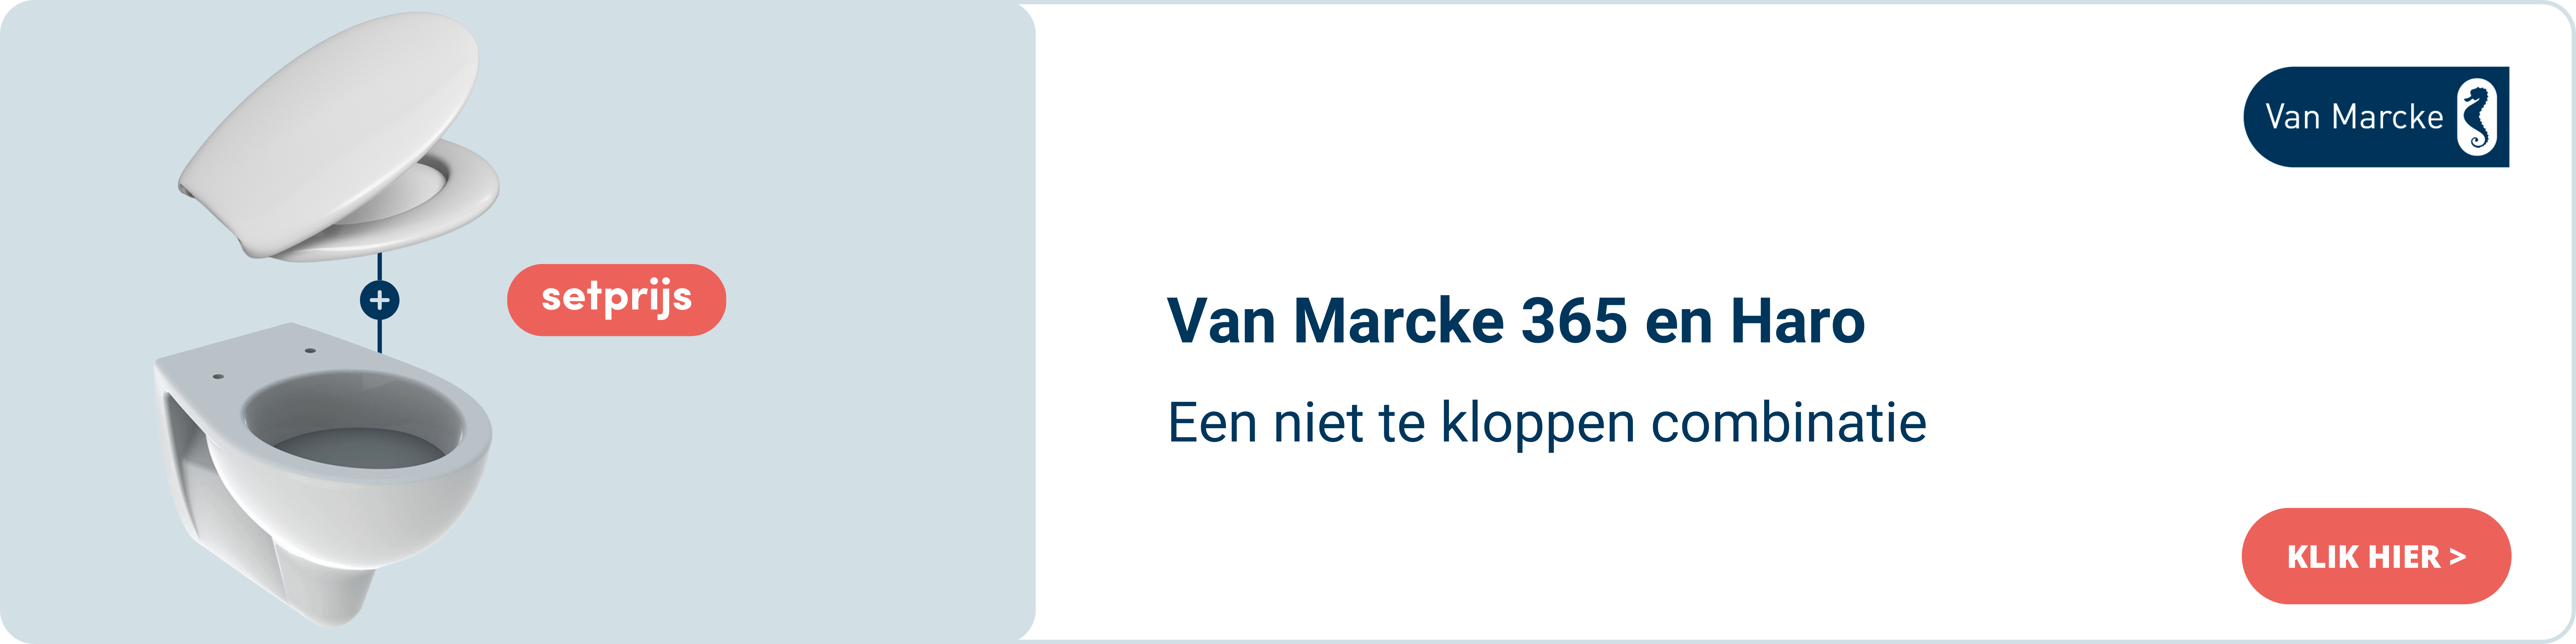 VM365 NL.png